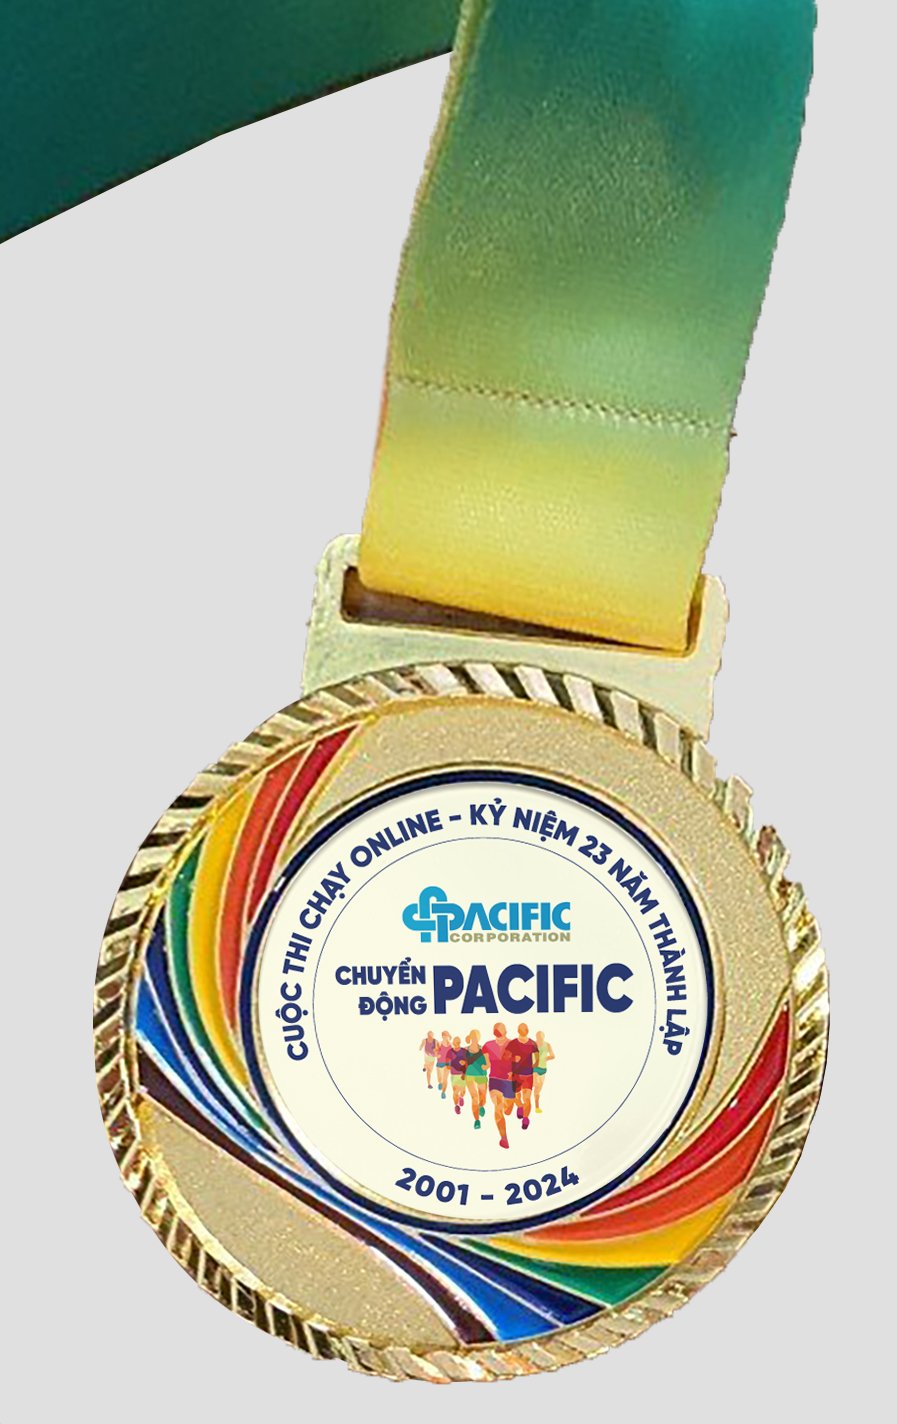 Huy chương Chuyển động Pacific